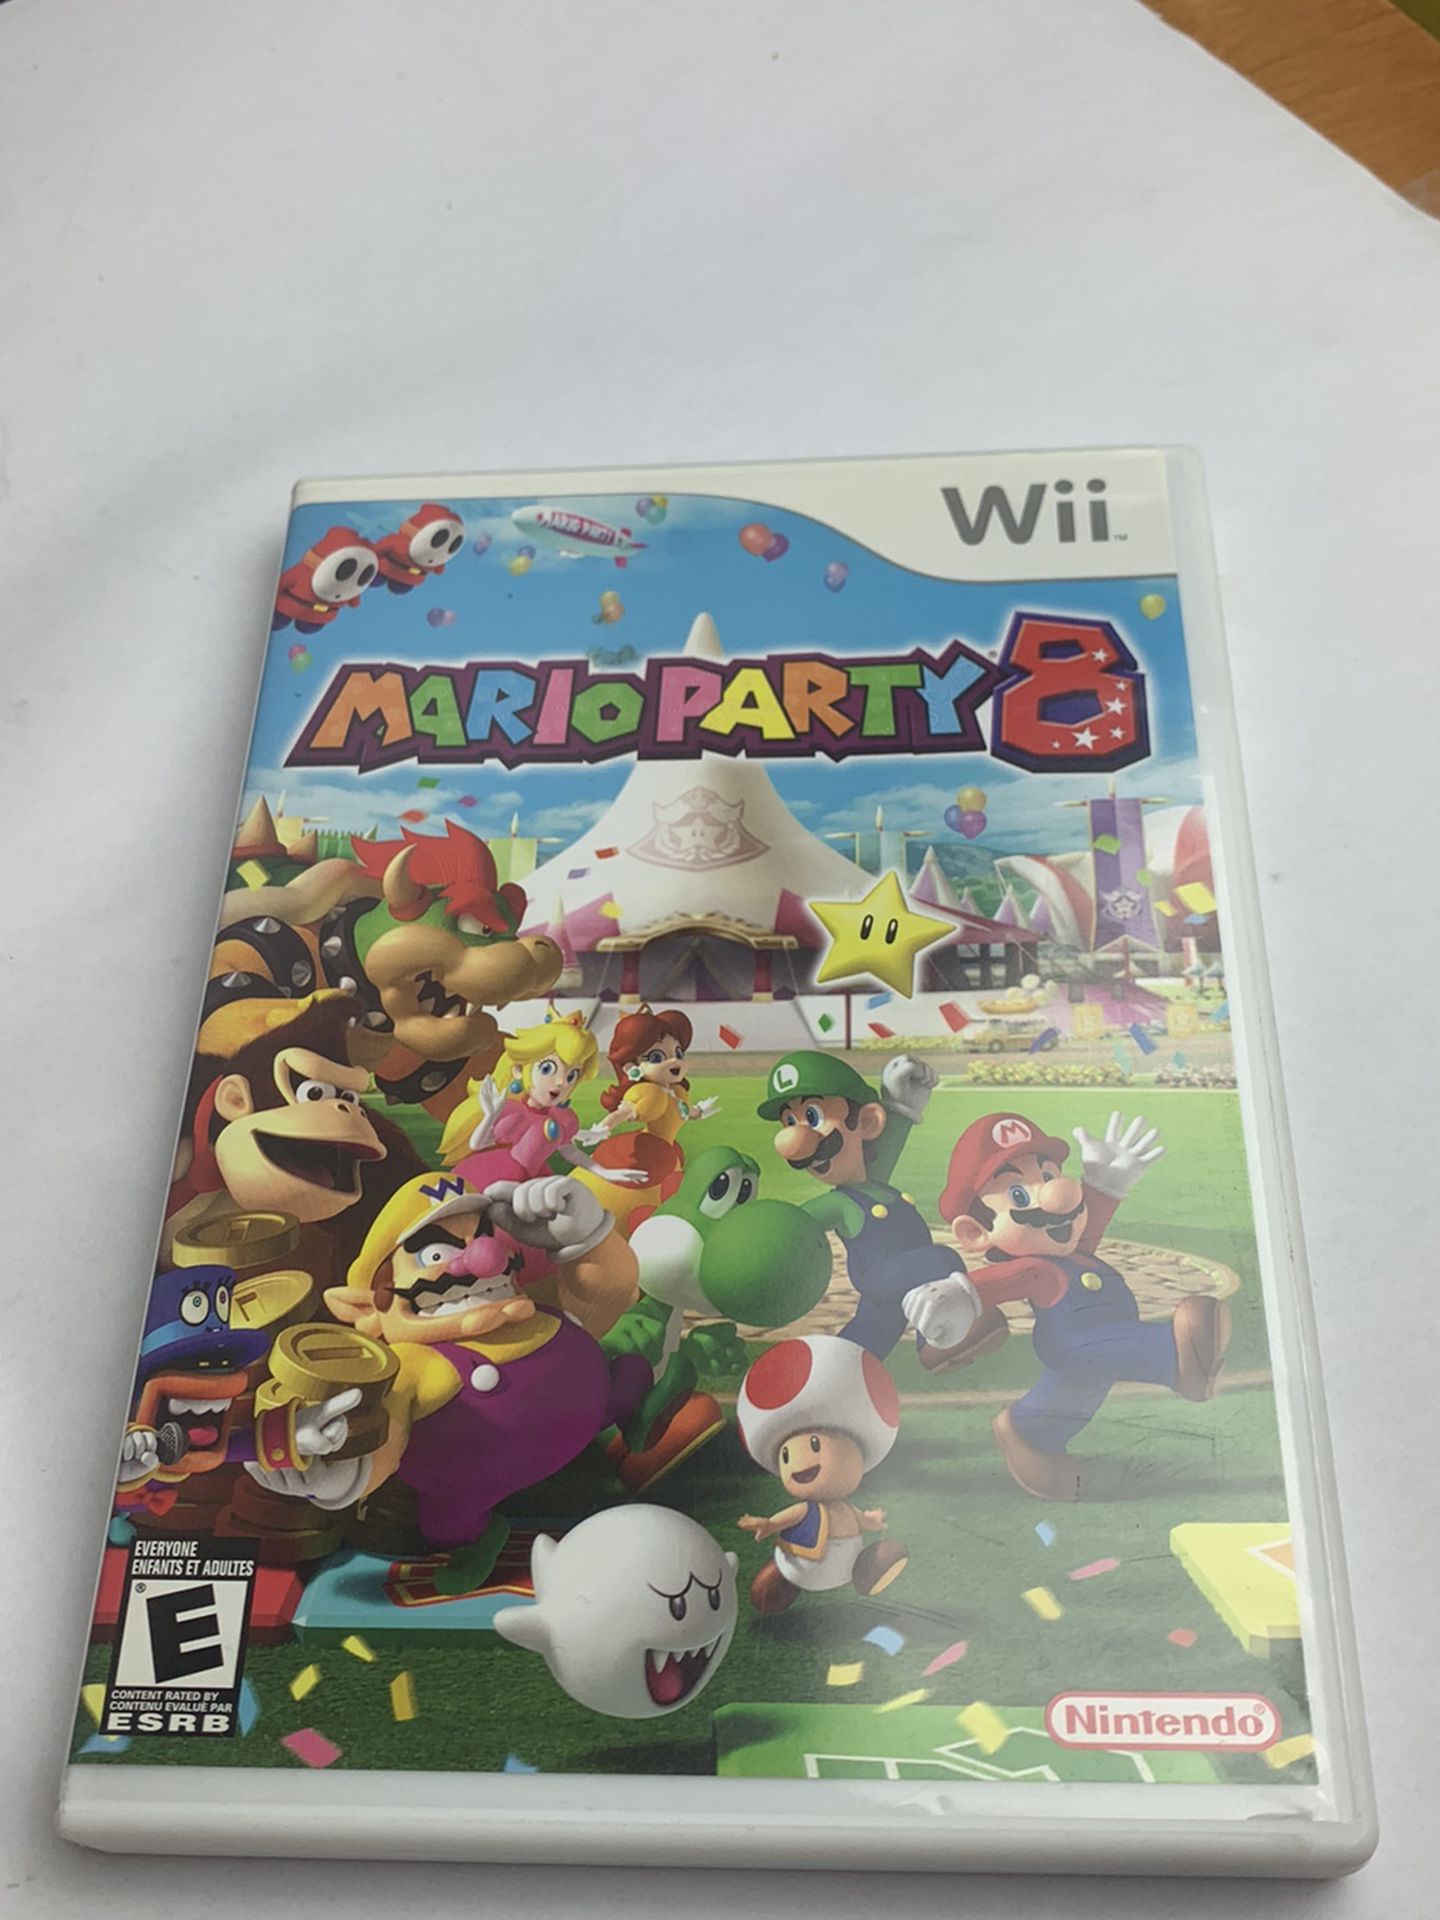 Nintendo Wii Mario Party 8 Complete